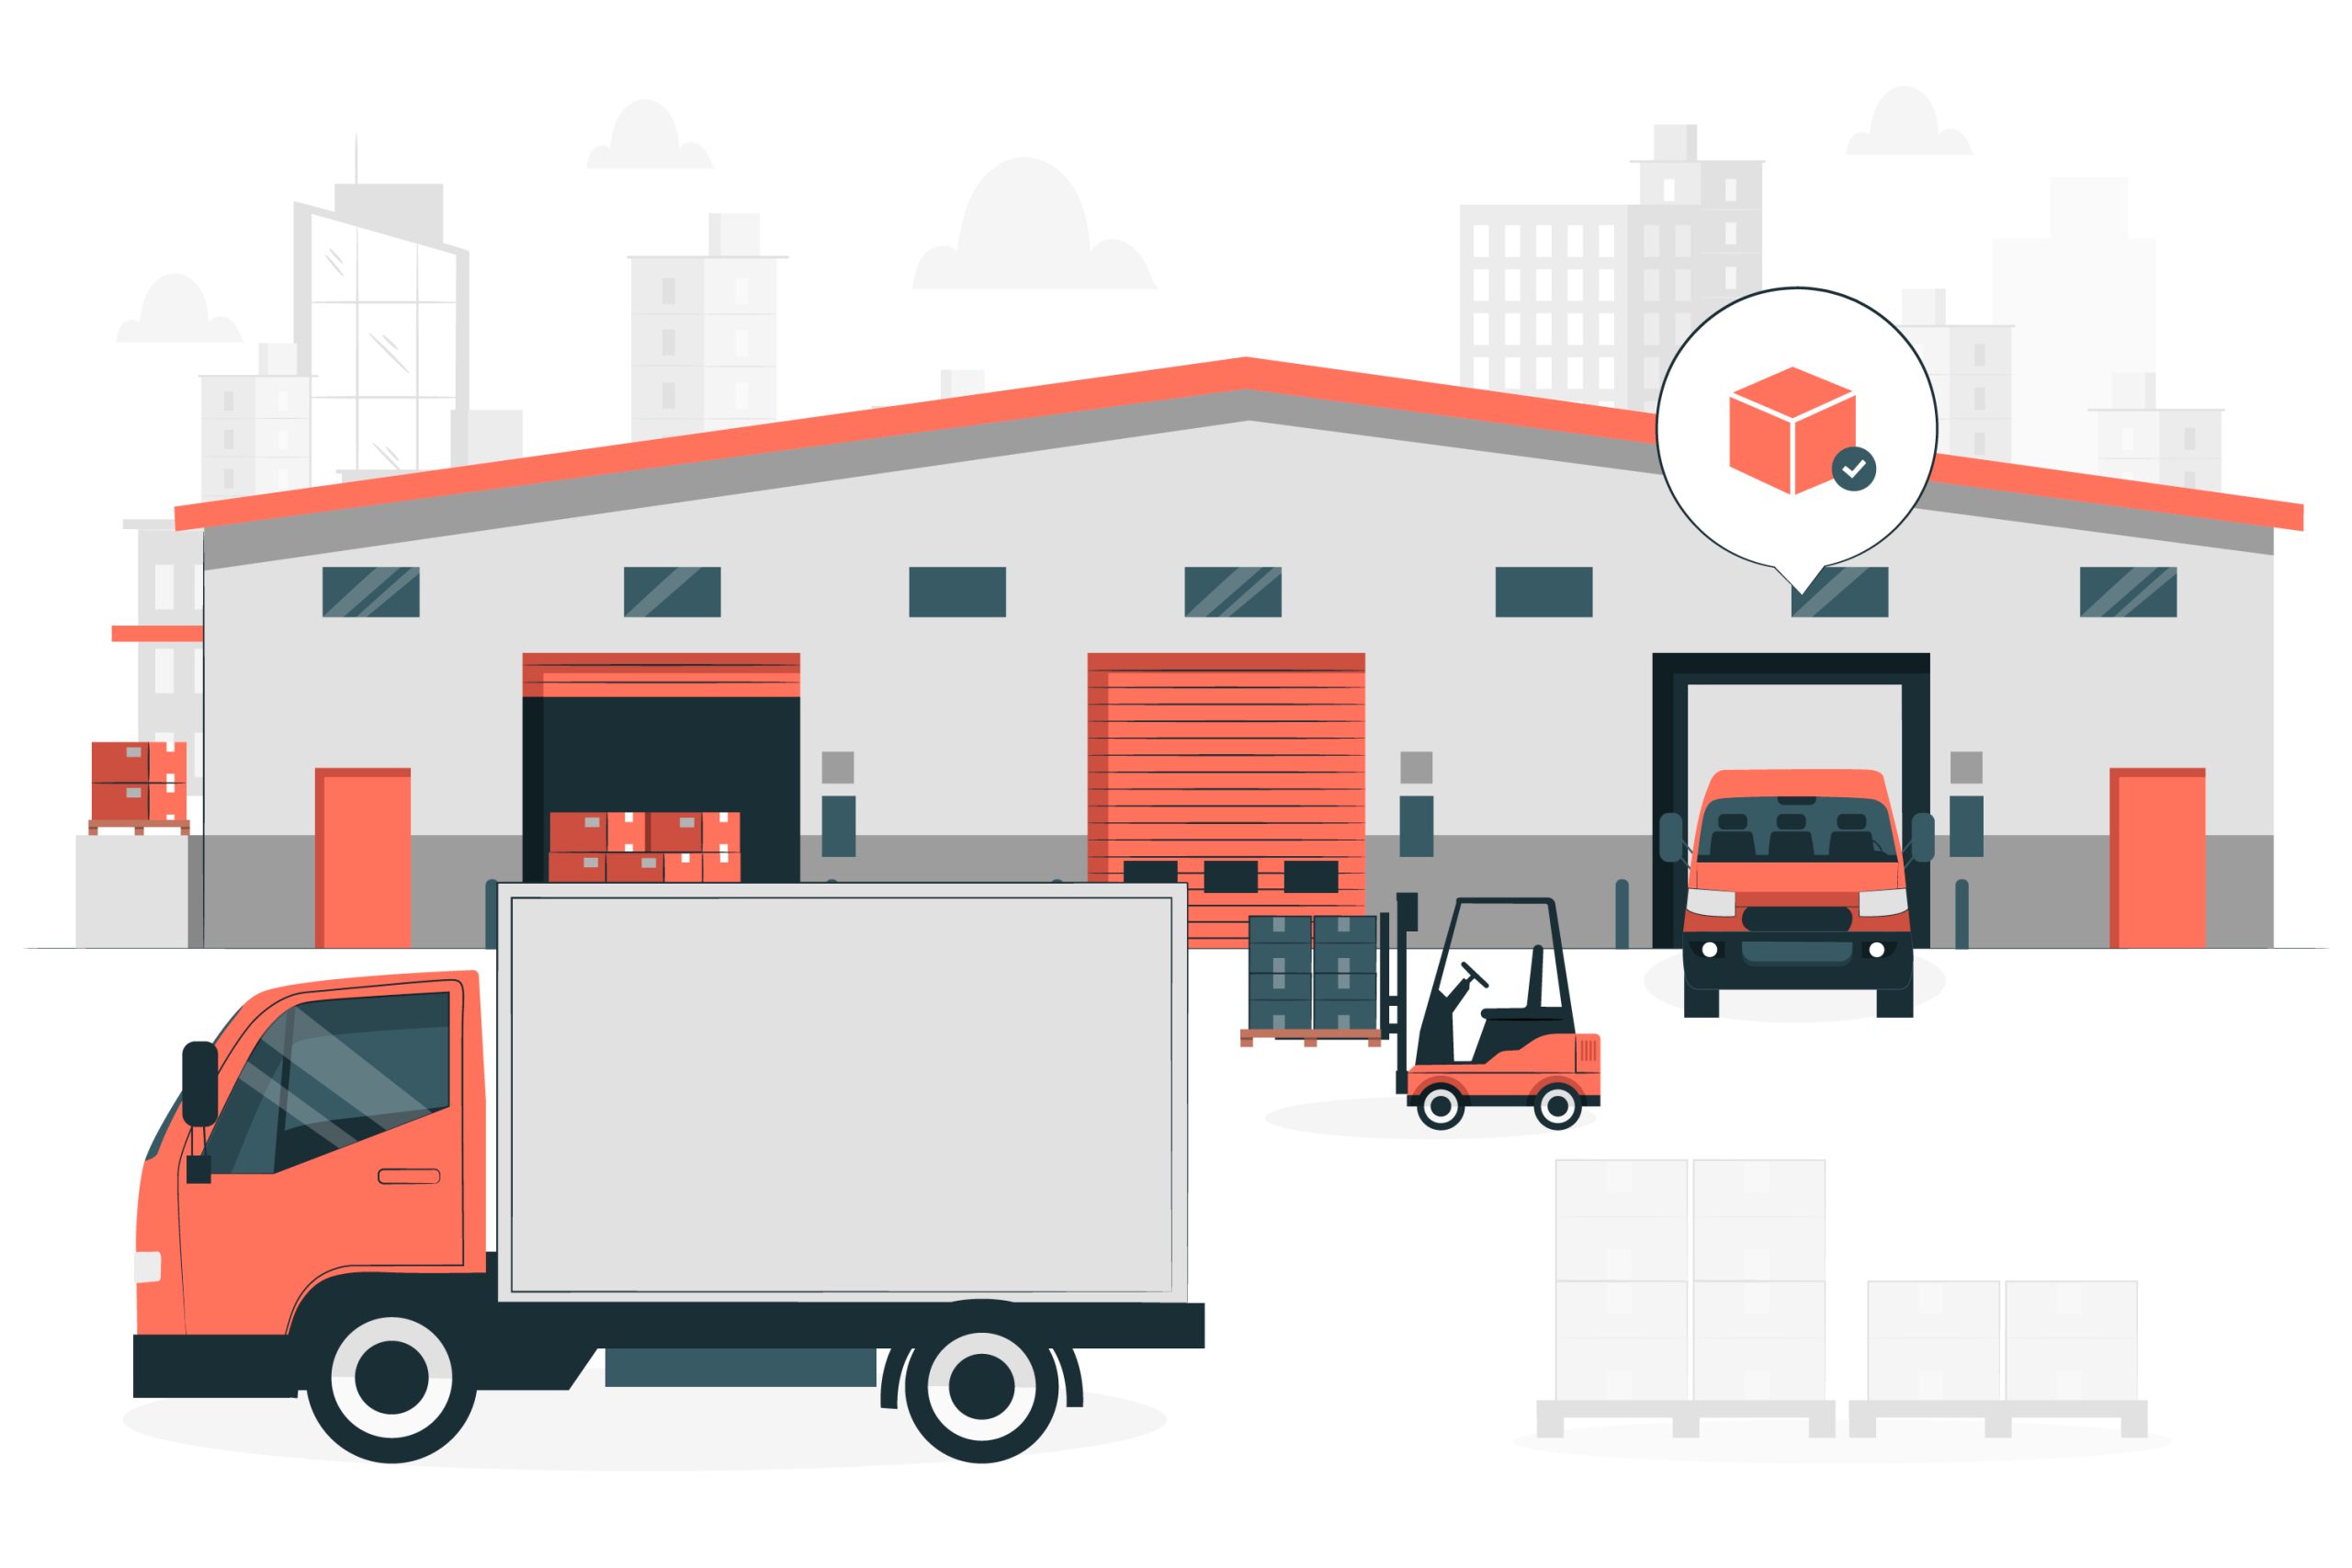 Ilustração que reúne um armazém, dois caminhões, uma empilhadeira e algumas caixas.